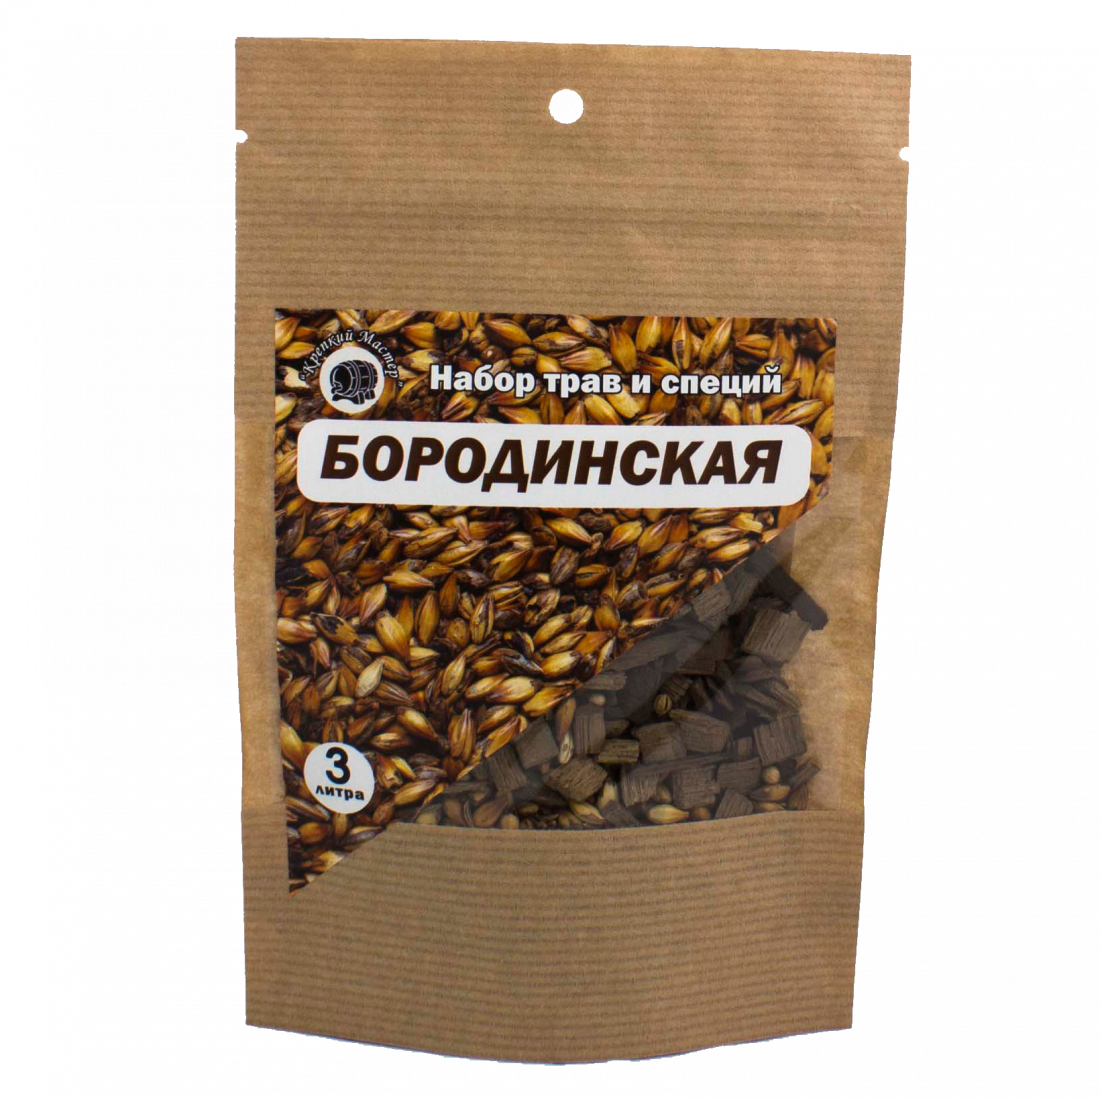 Набор для настойки "Бородинская", на 3 литра (КМ)